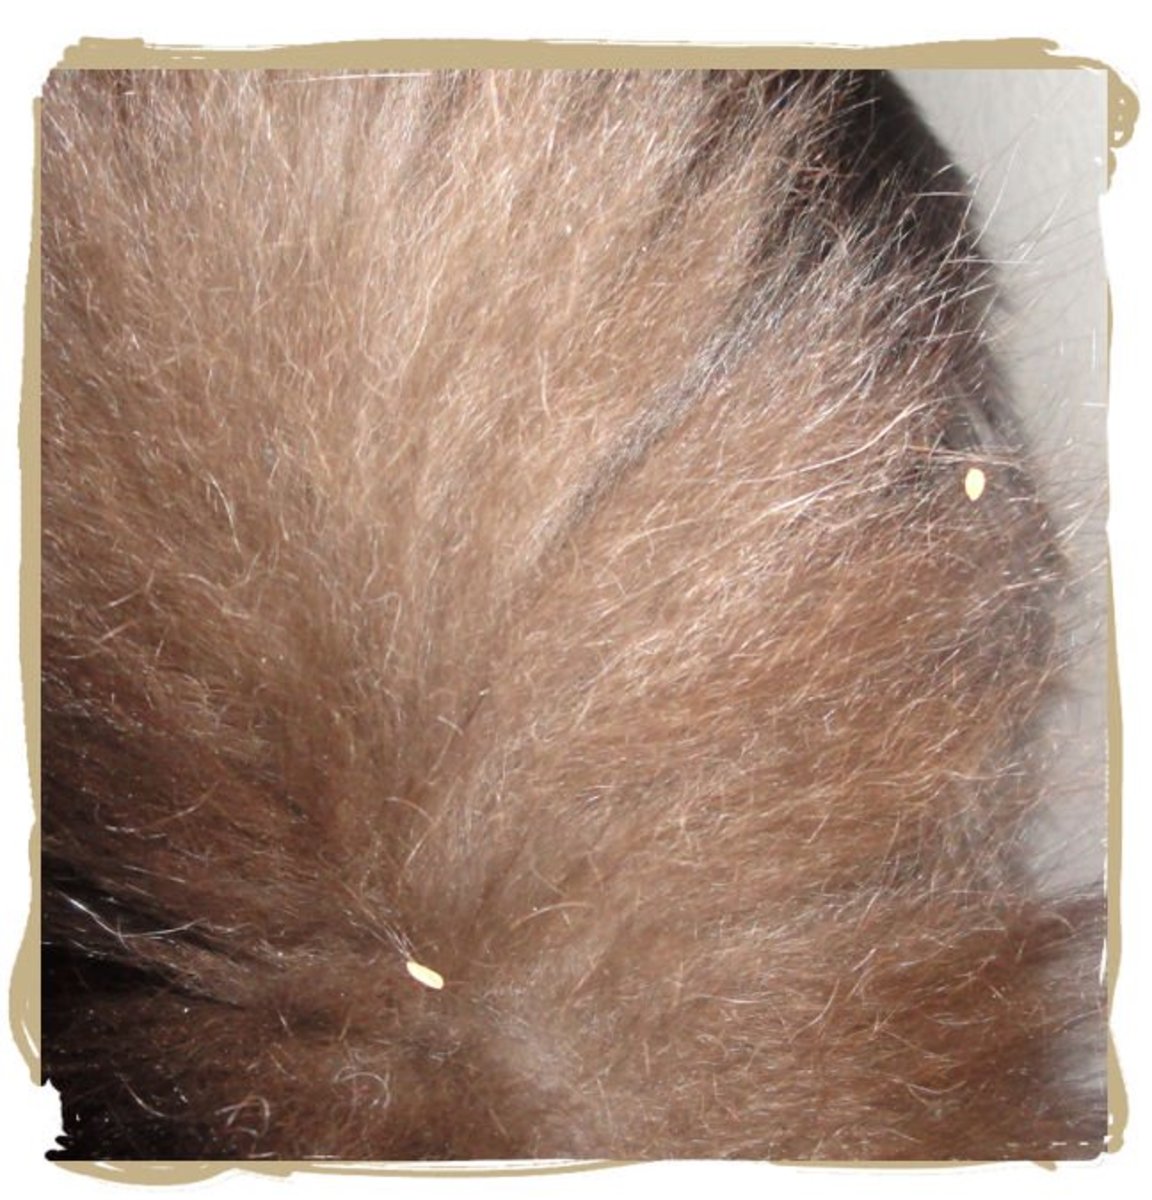 Tapeworm segments in cat tail fur.